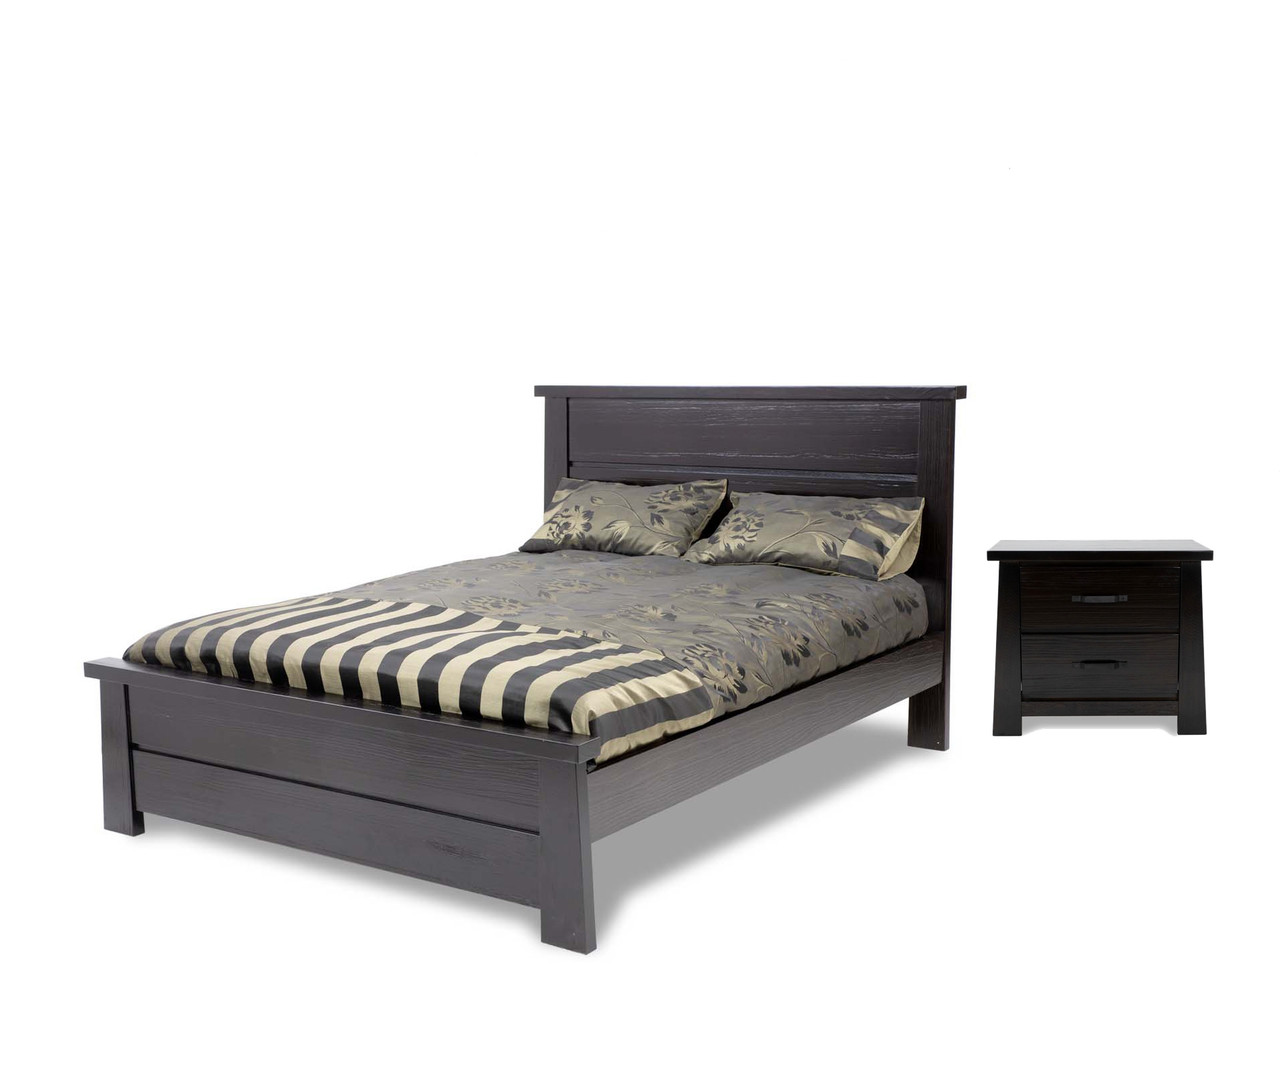 Jordan Queen 3 Piece Bedside Bedroom Set Model 10 15 18 4 1 14